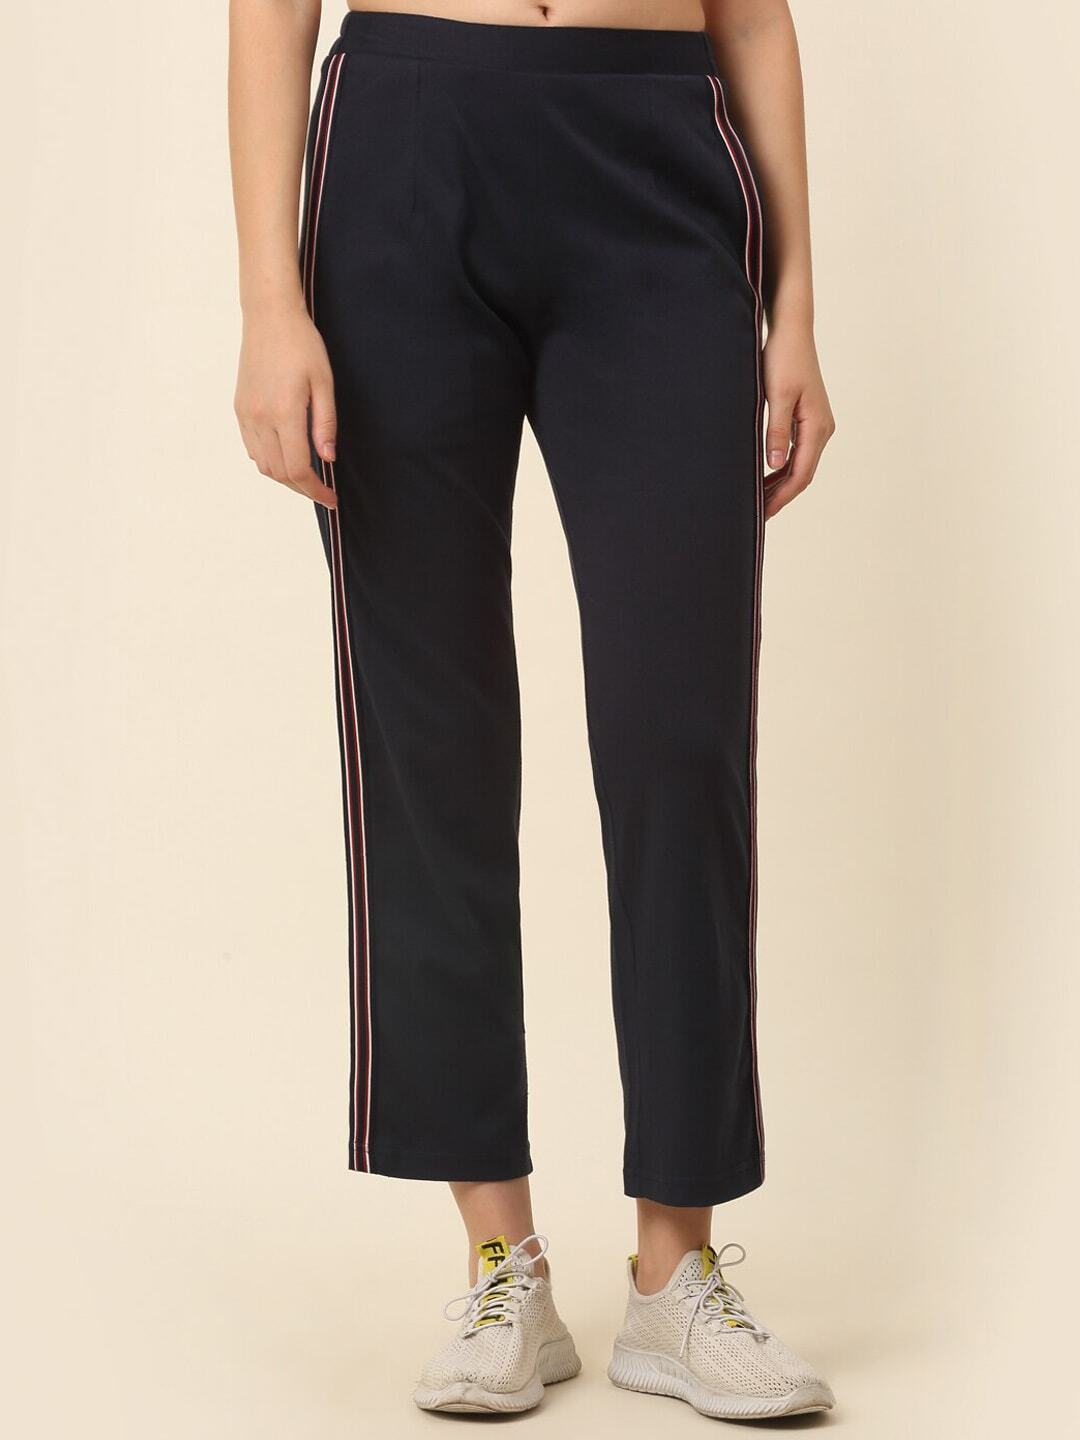 Adidas Women's Sst Plus Size Track Pants 65$ NWT 3XL XXXL | eBay